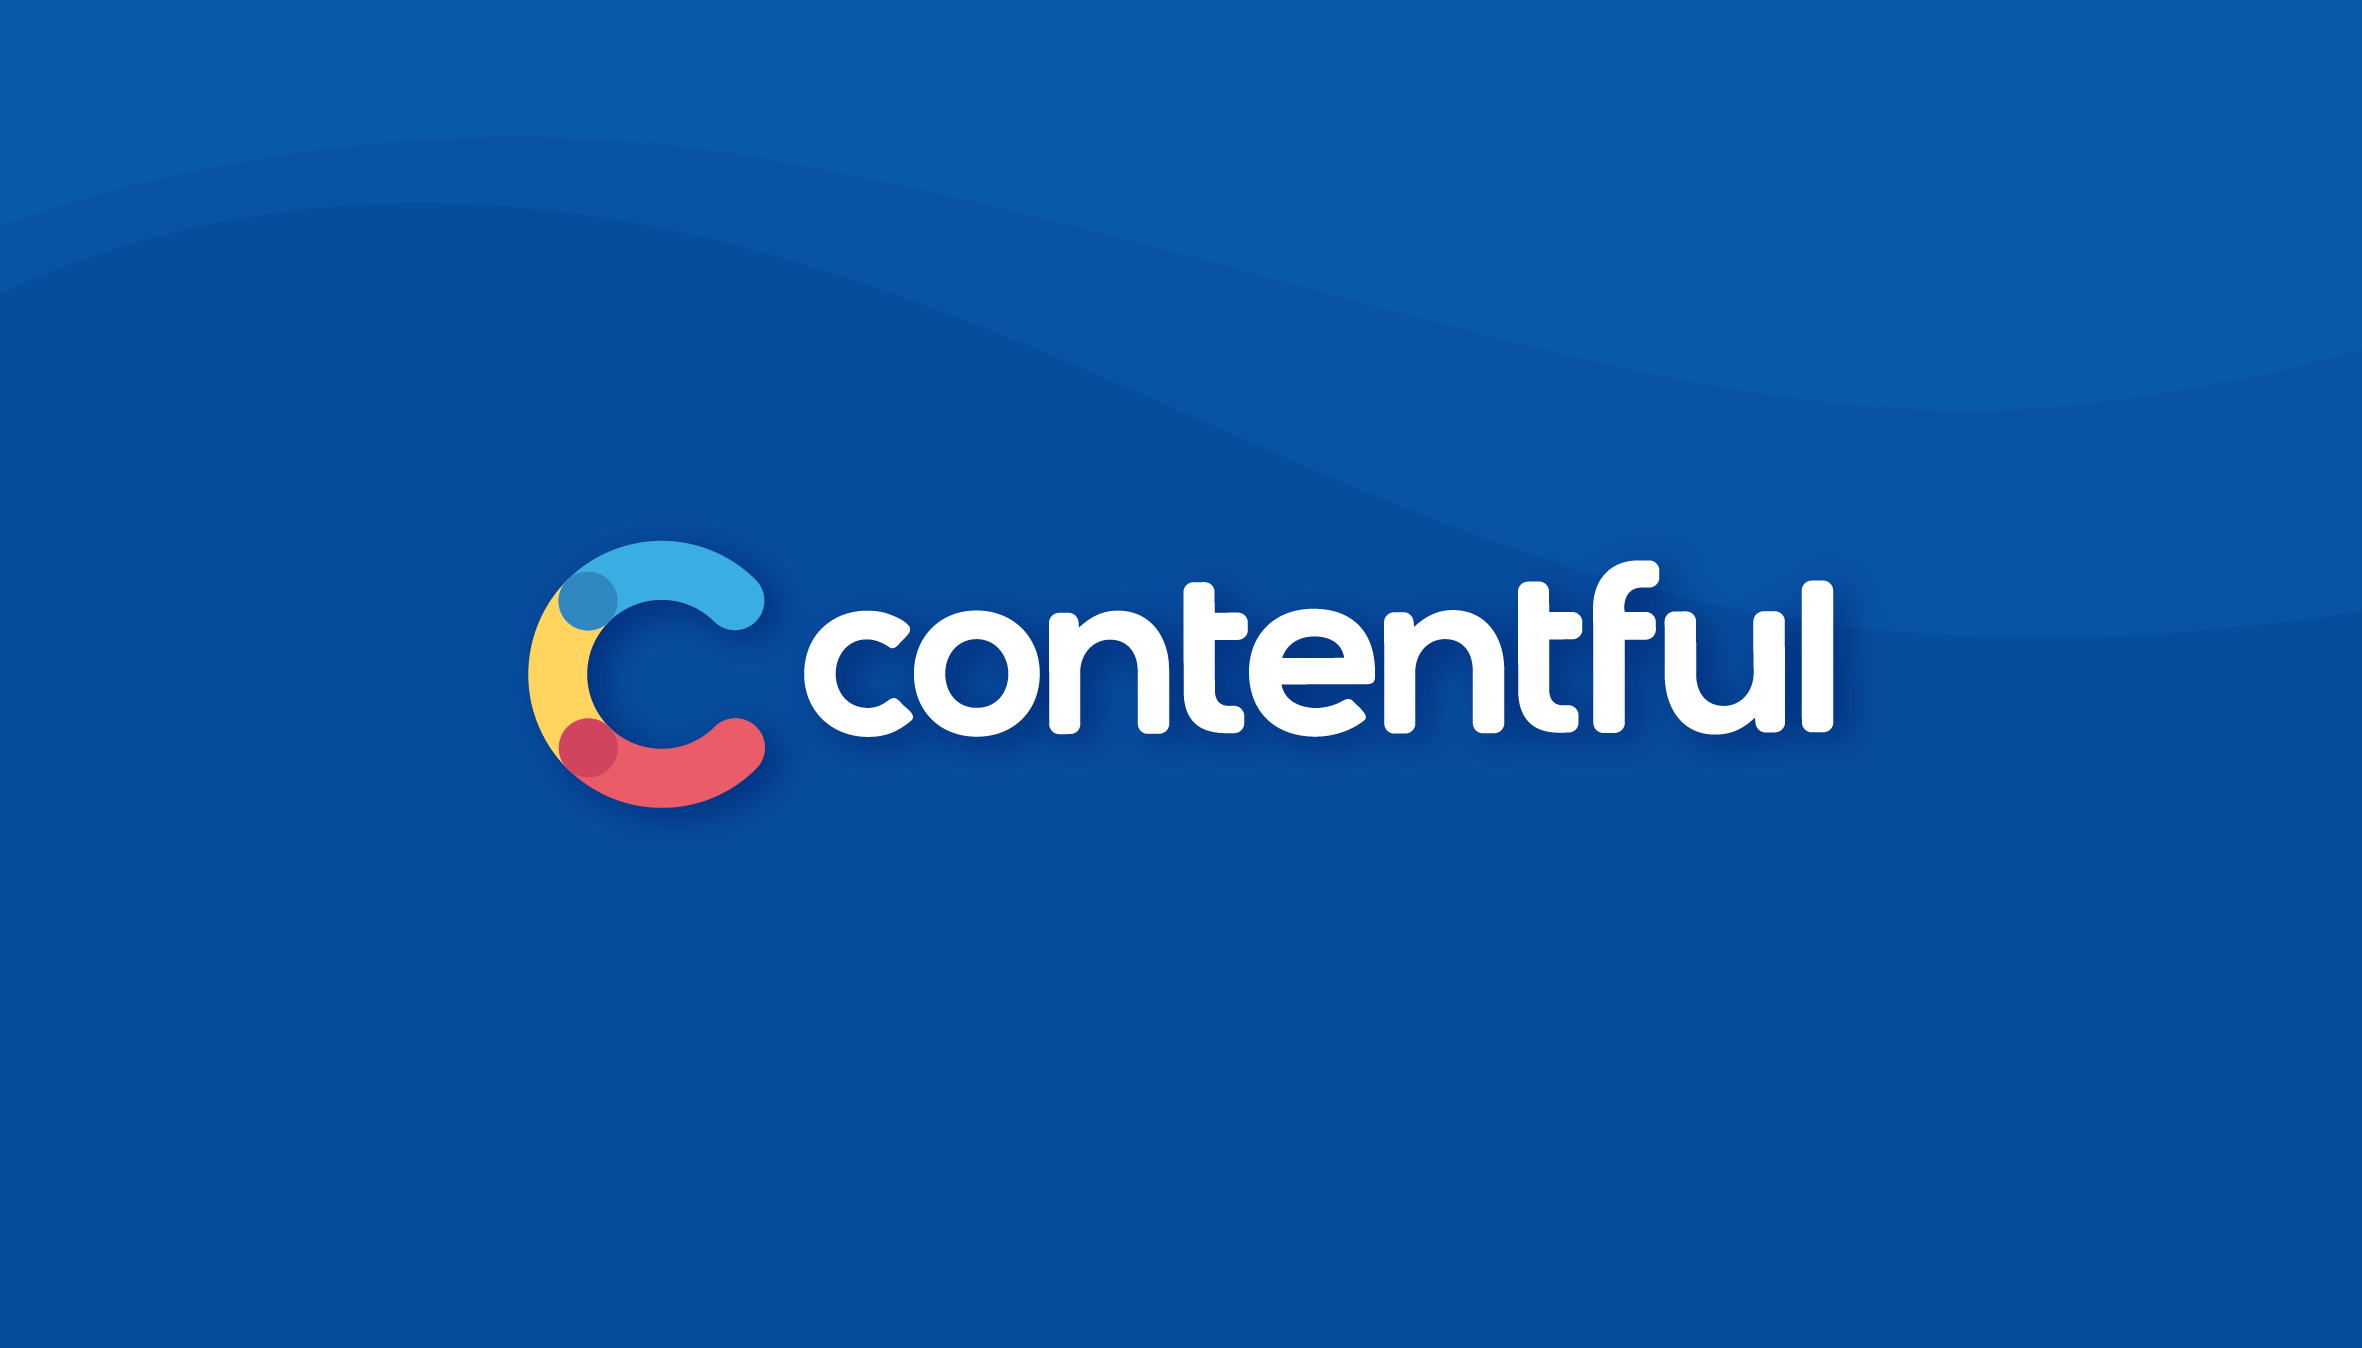 API-first content platform to build digital experiences